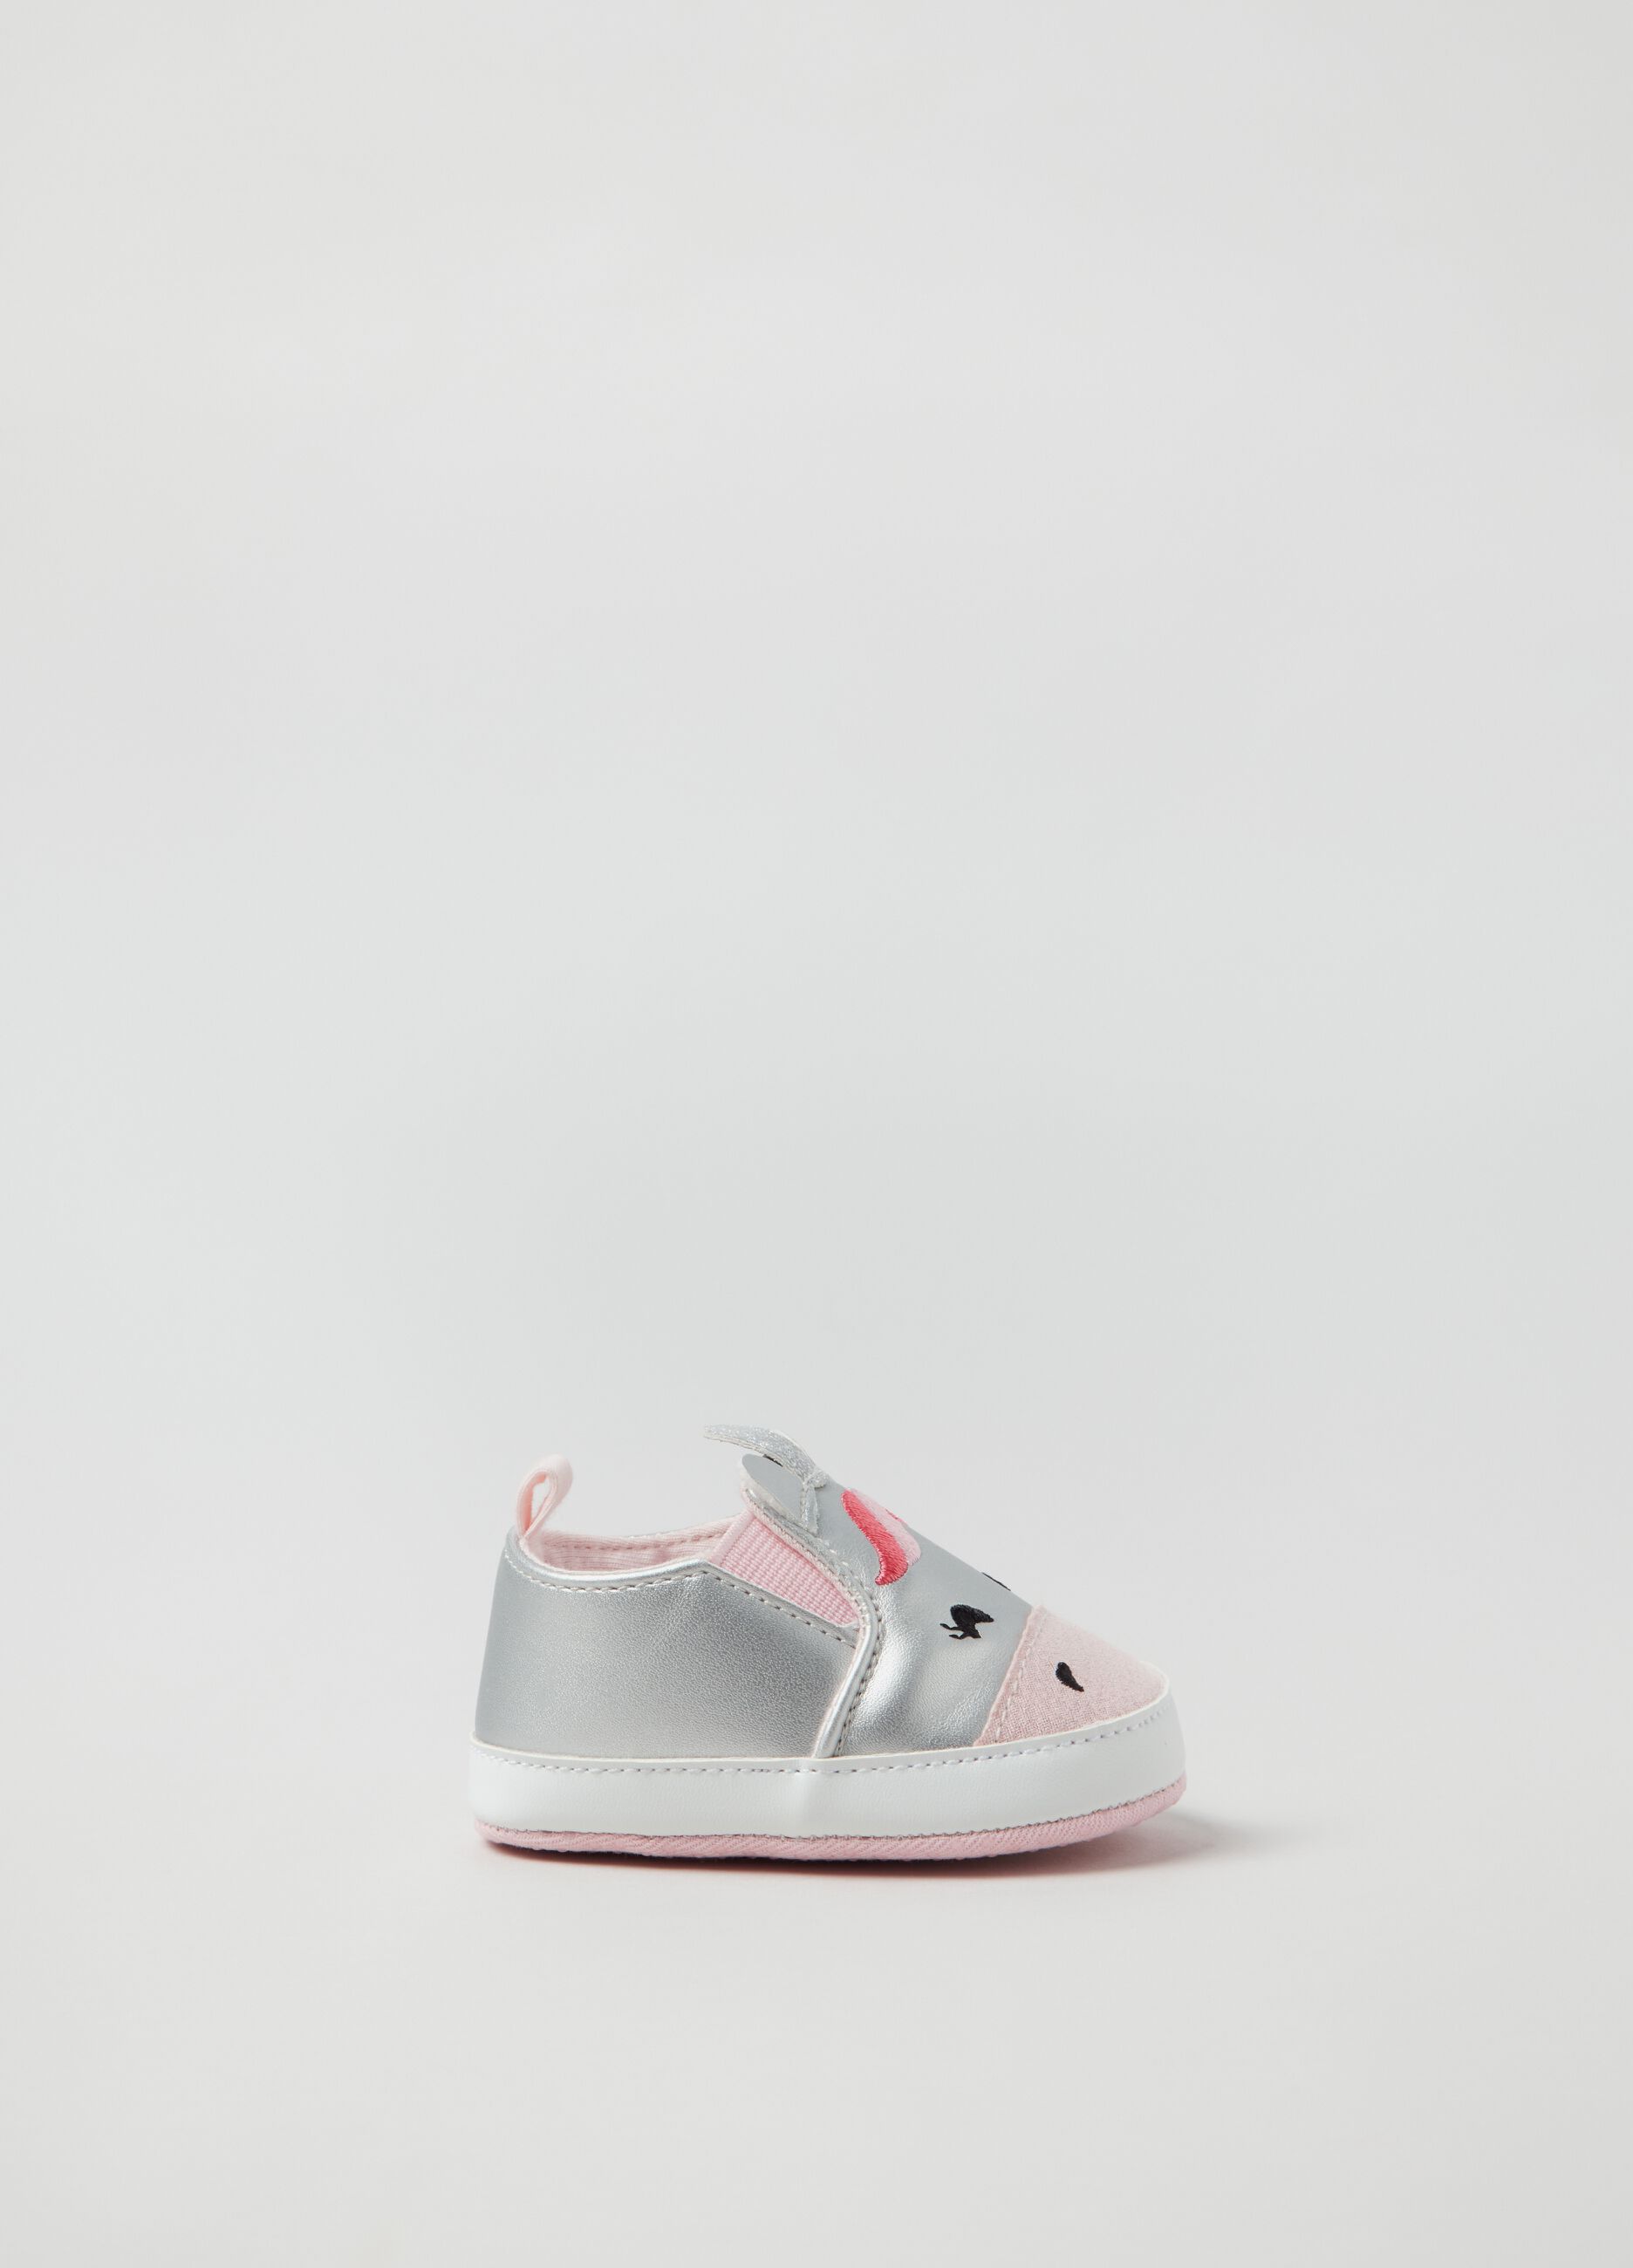 Slip-on unicorn shoes